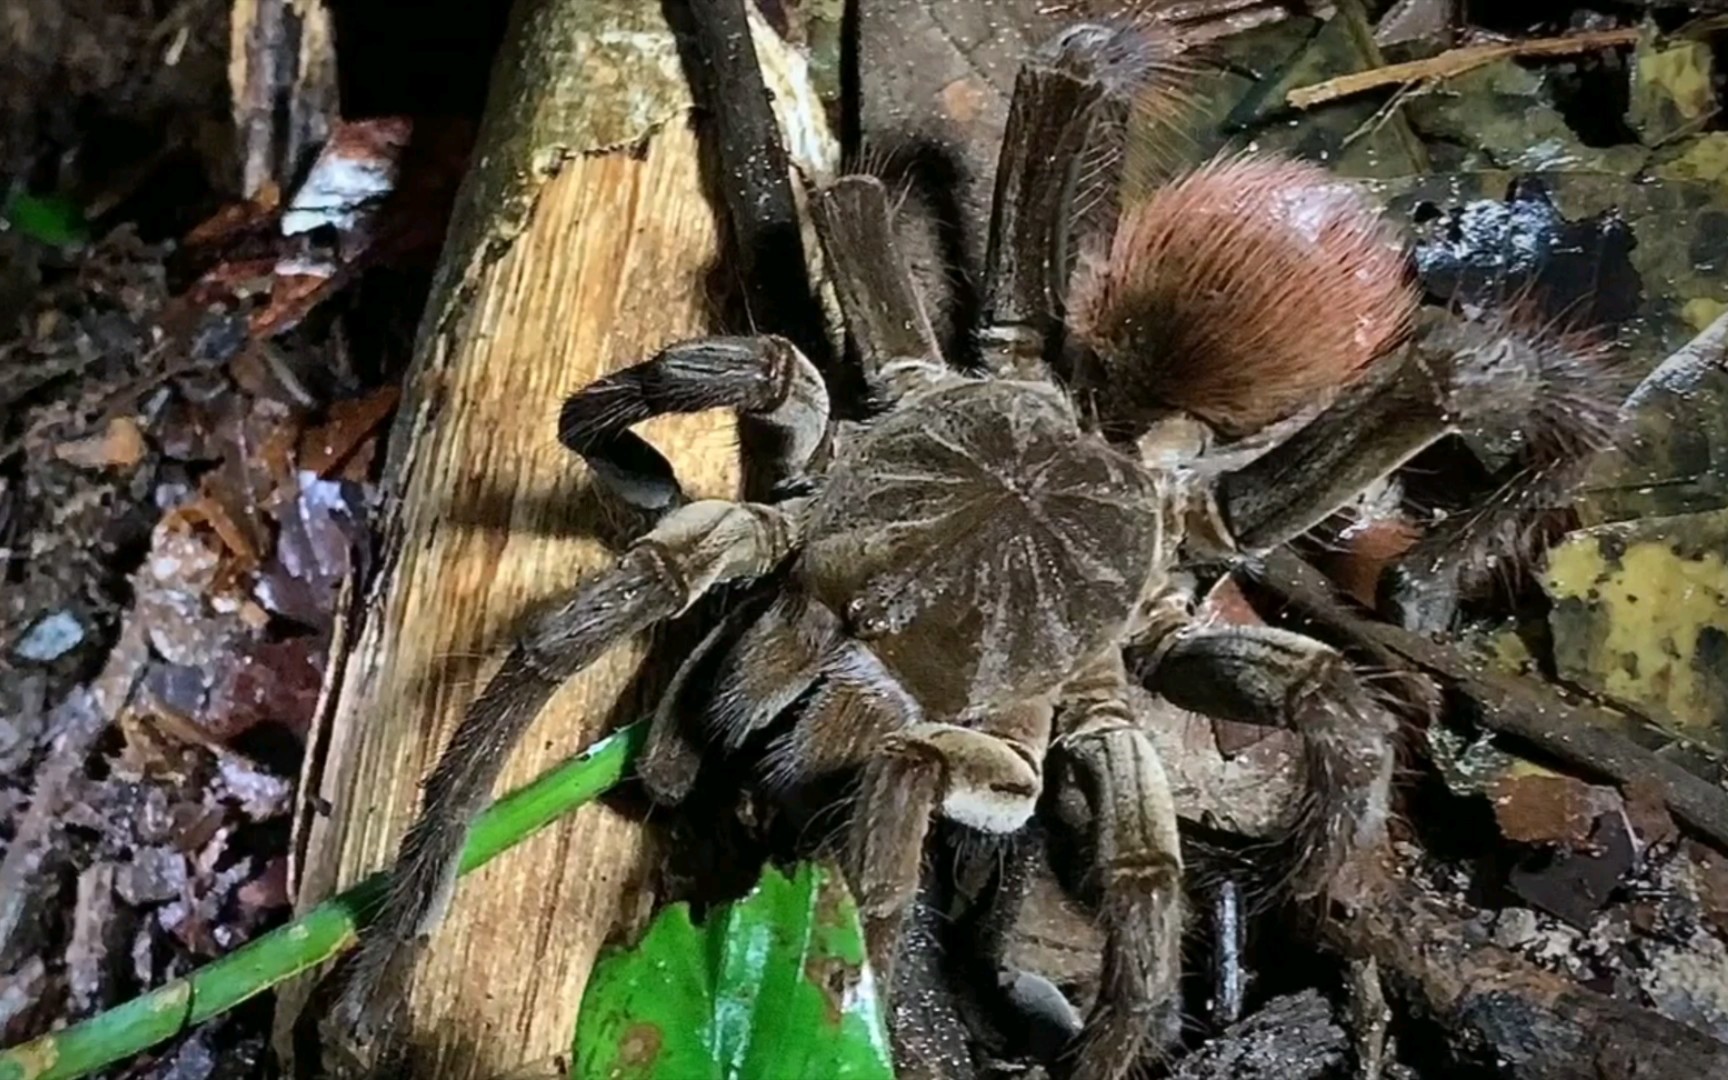 至福在亚马逊雨林勾引世界上最大的蜘蛛多是一件美事啊嘿嘿